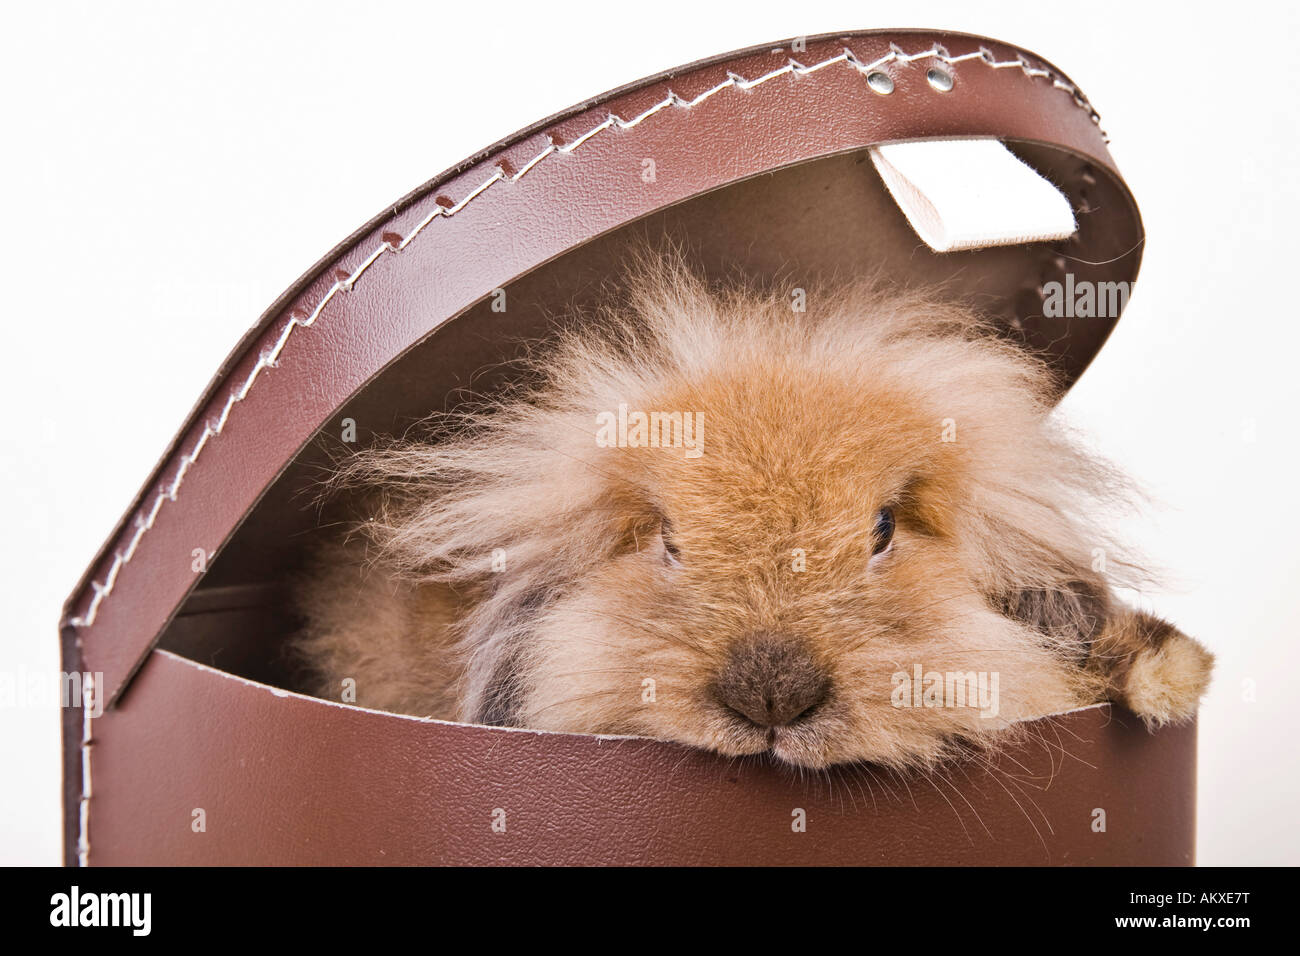 Rabbit in a carton Stock Photo